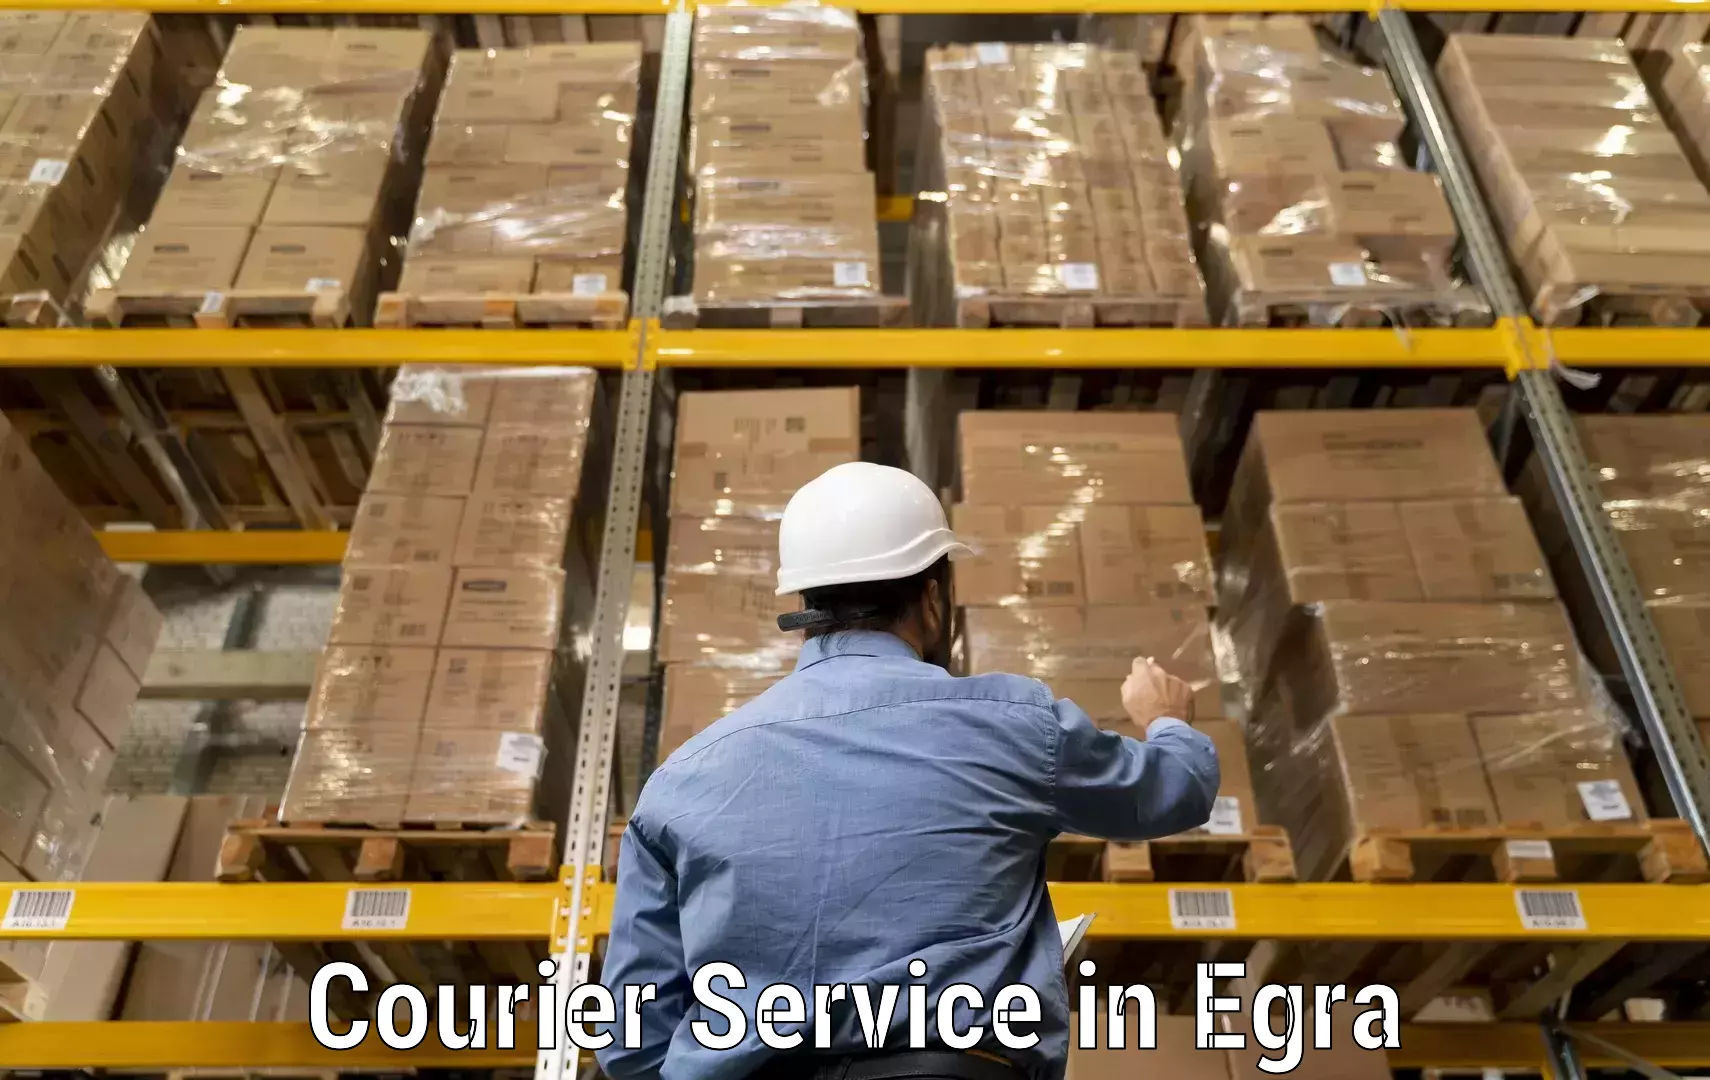 Remote area delivery in Egra